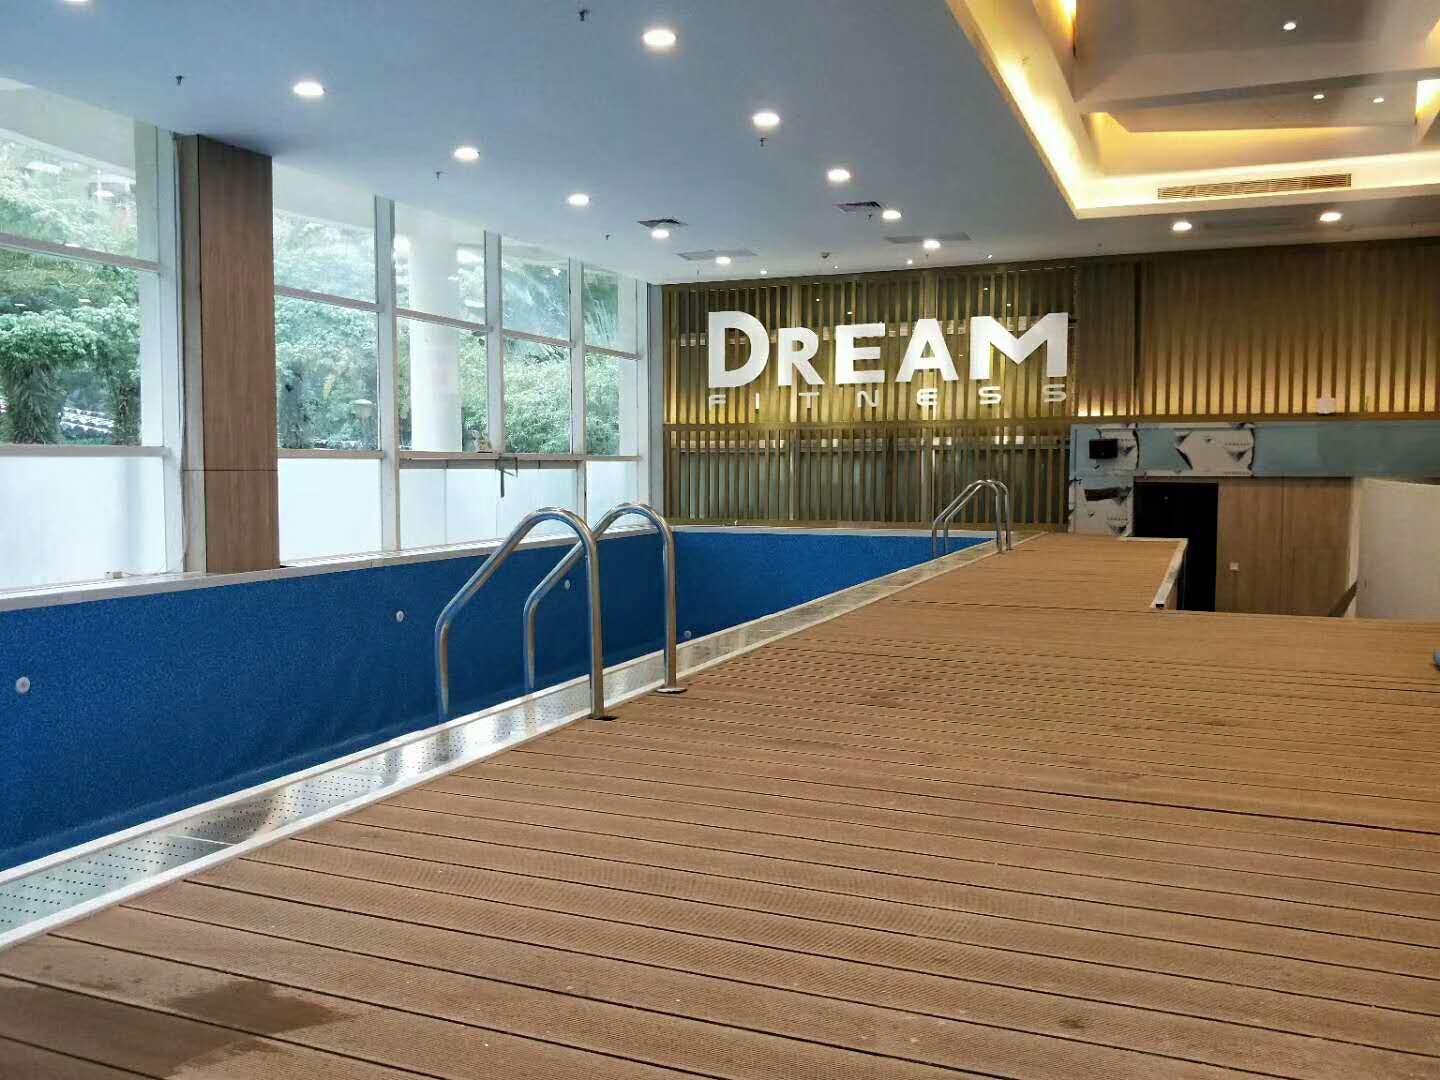 广东省潮州市钢结构拼装式泳池 拆装式泳池 整体游泳池 健身房泳池